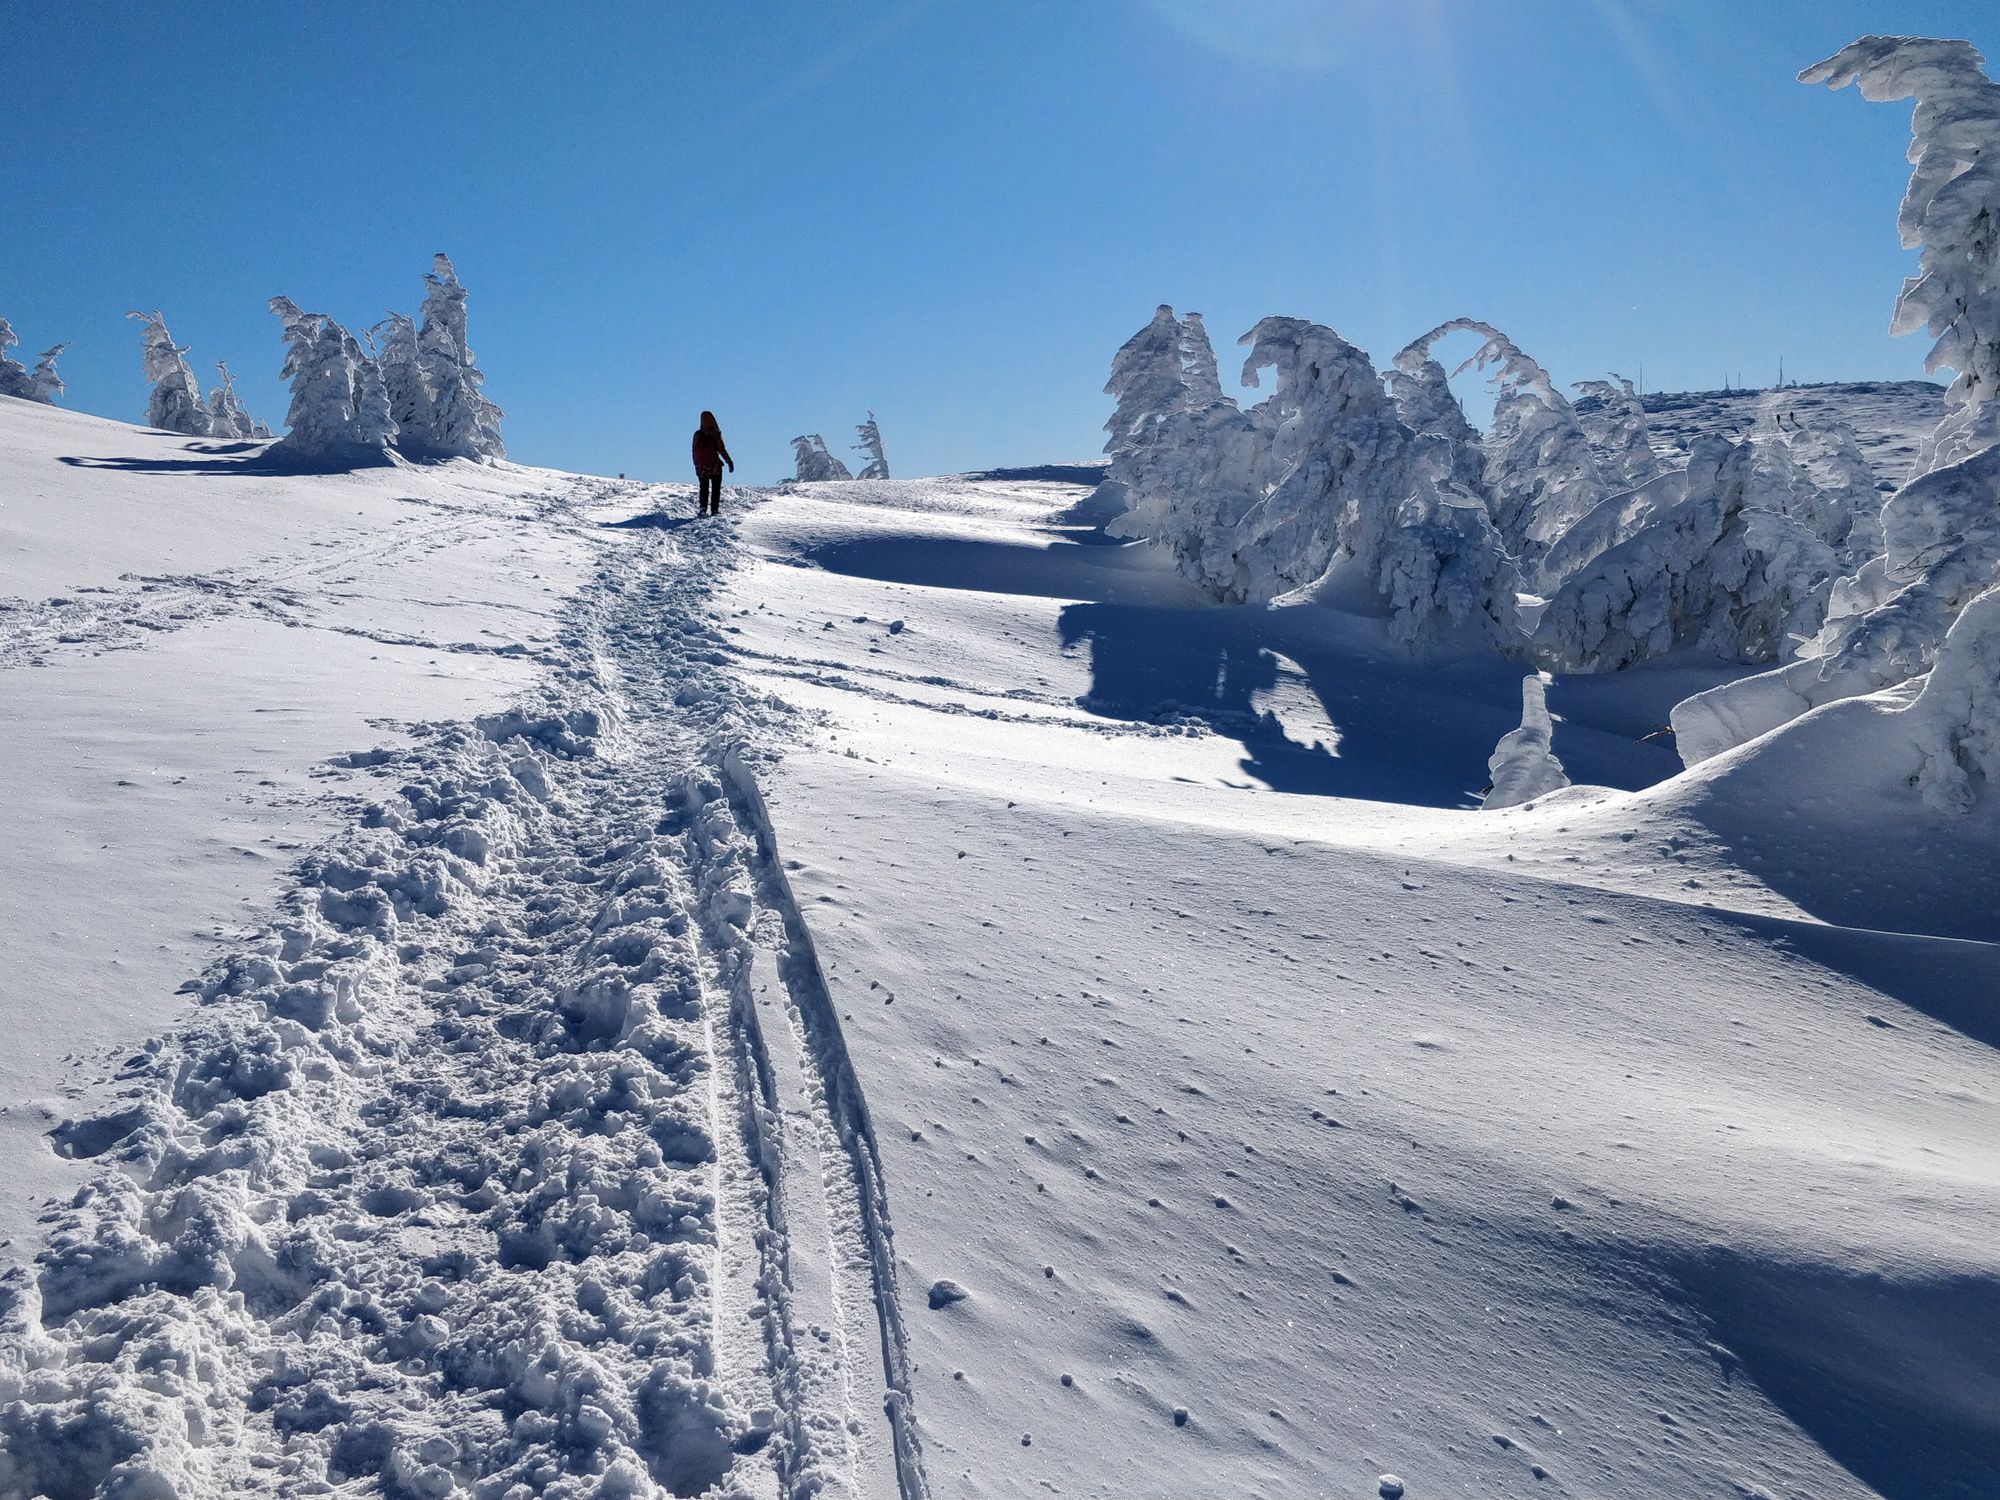 A Peak With Surprise: Vlădeasa, from Rogojel, in Winter Season (Jan 2022)